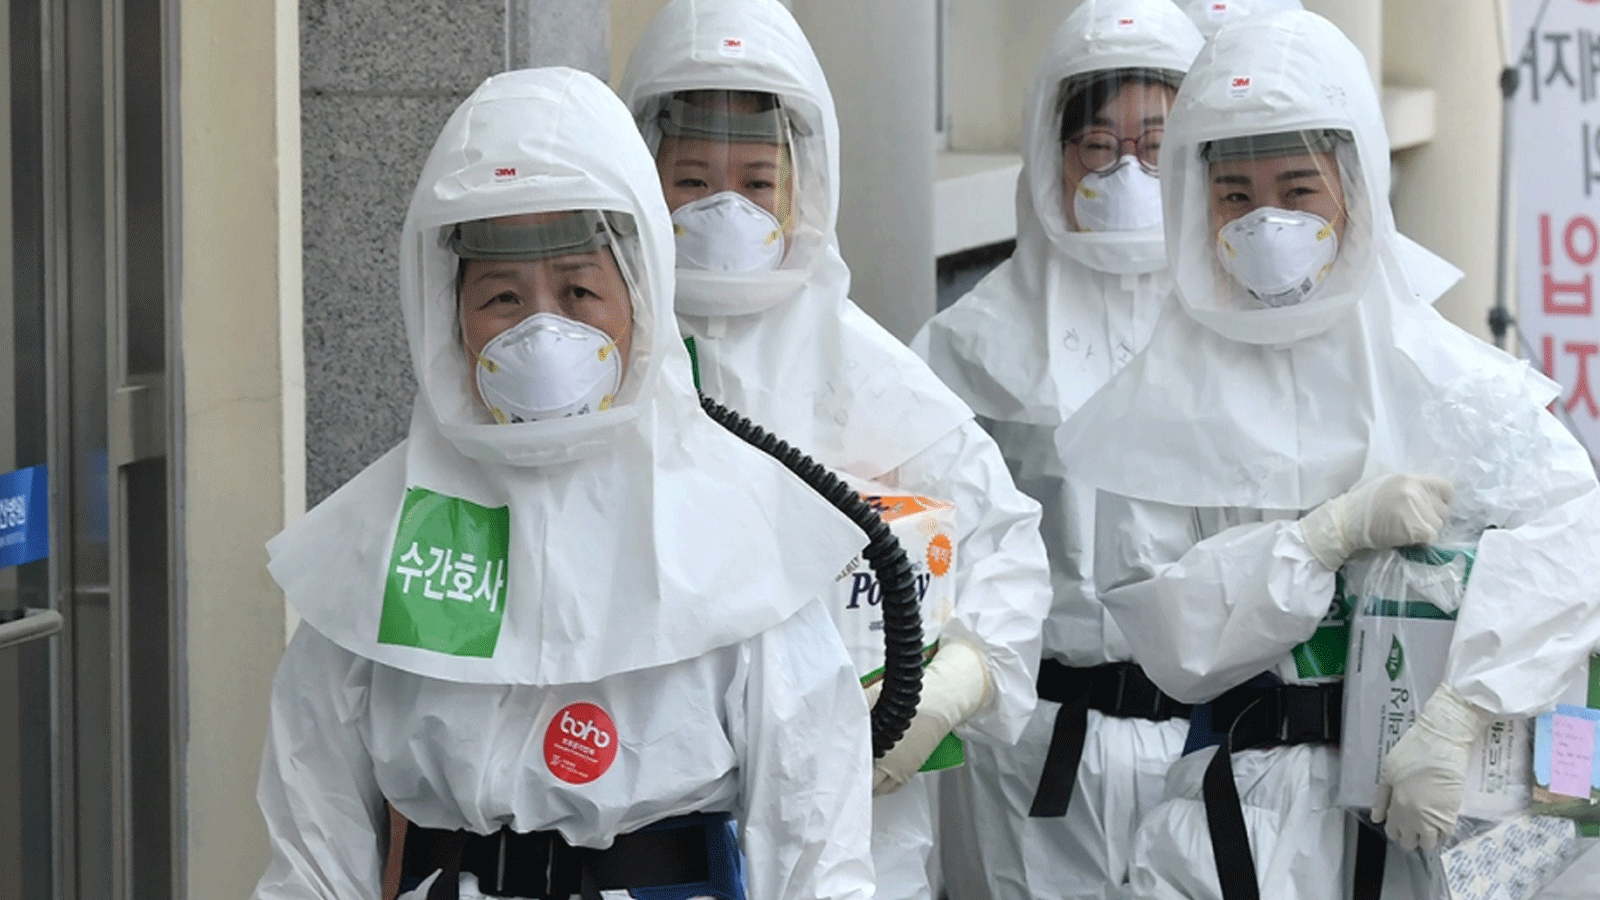  ممرضات يرتدون ملابس واقية لرعاية المرضى المصابين بفيروس كورونا في مستشفى جامعة Keimyung Daegu Dongsan في دايجو، كوريا الجنوبية، في 29 نيسان\أبريل 2020